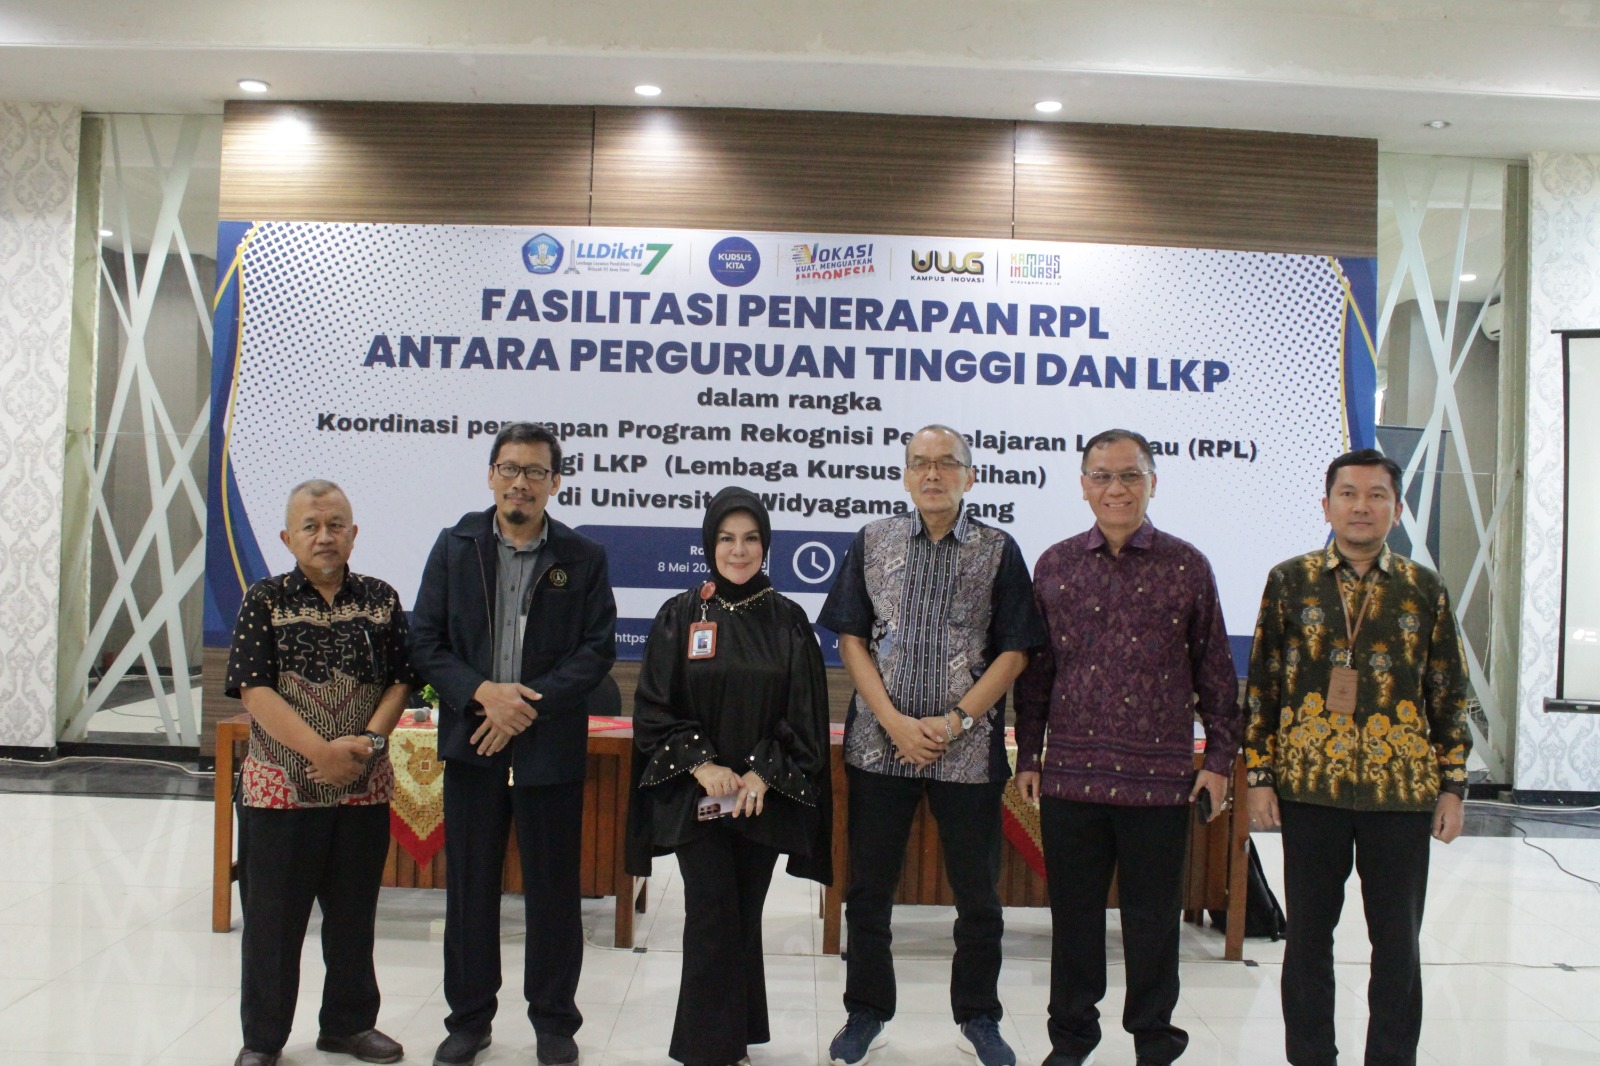 LLDIKTI Wilayah VII Jawa Timur Gelar Acara Fasilitasi Penerapan RPL di UWG Malang